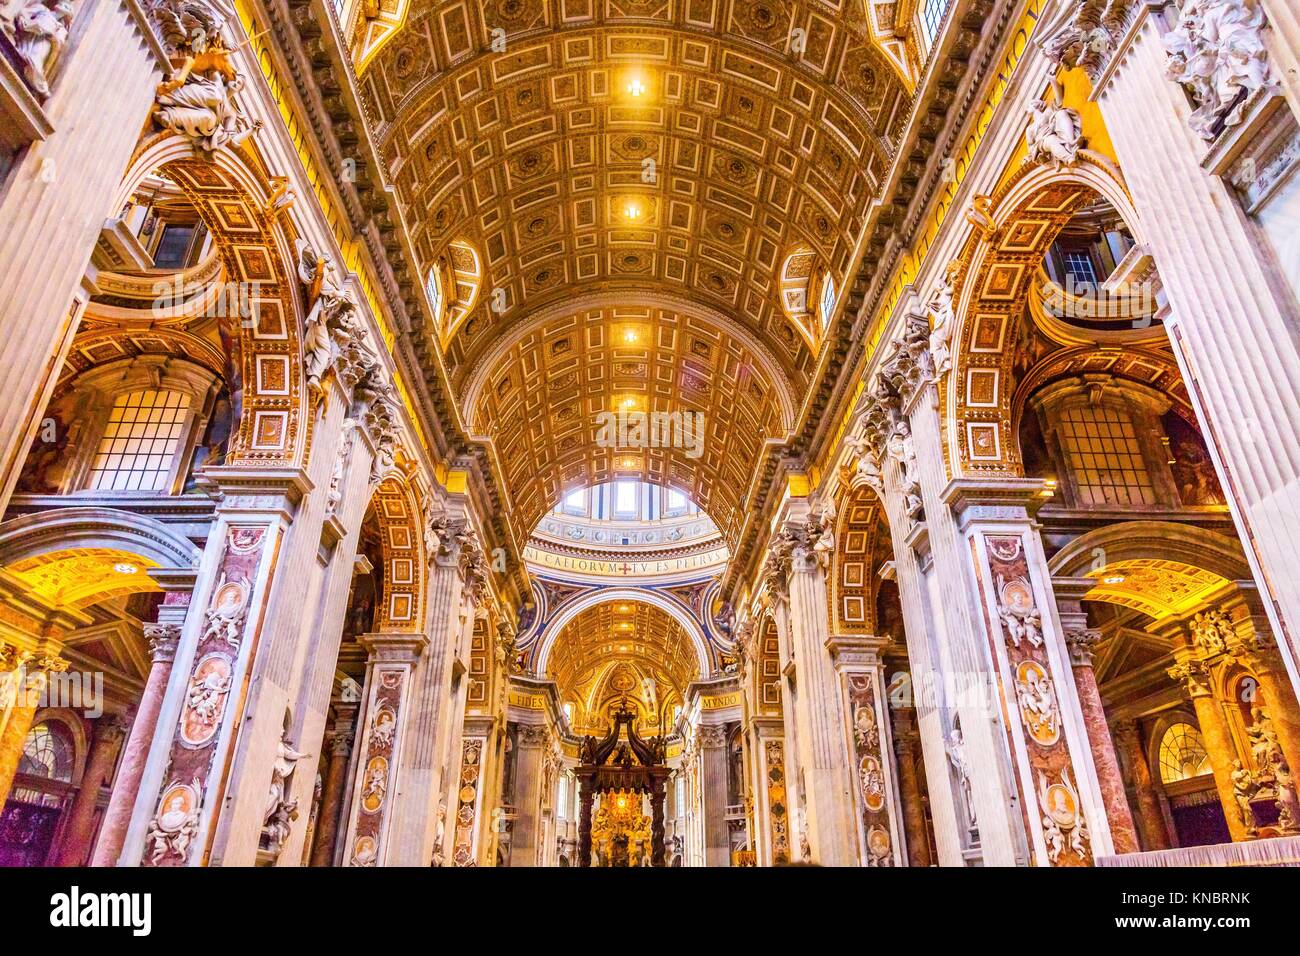 La Basilique Saint-Pierre Nef Bernini Baldacchino Esprit Saint Colombe Vatican Rome Italie. Baldacchino Canopy construite en 1600s sur autel et de Saint Pierre Banque D'Images